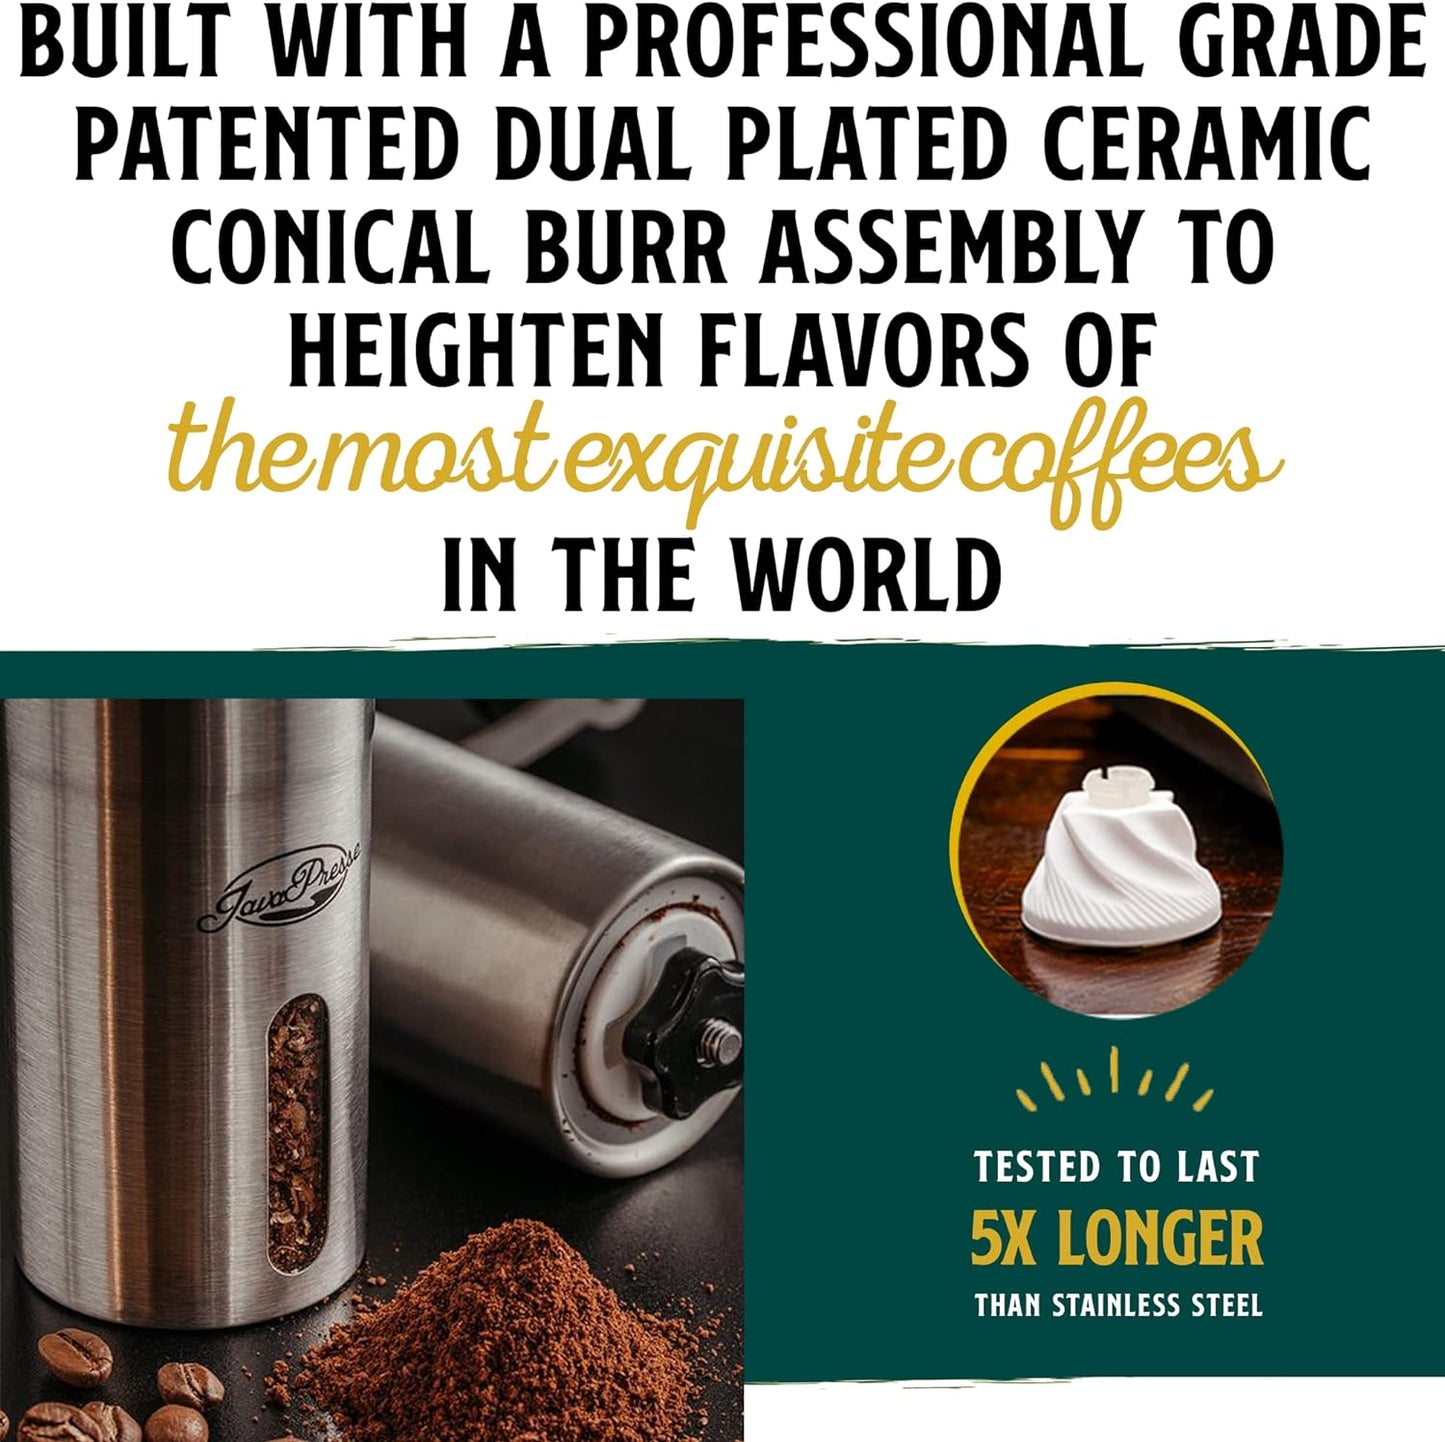 JavaPresse Manual Coffee Grinder - Stainless Steel